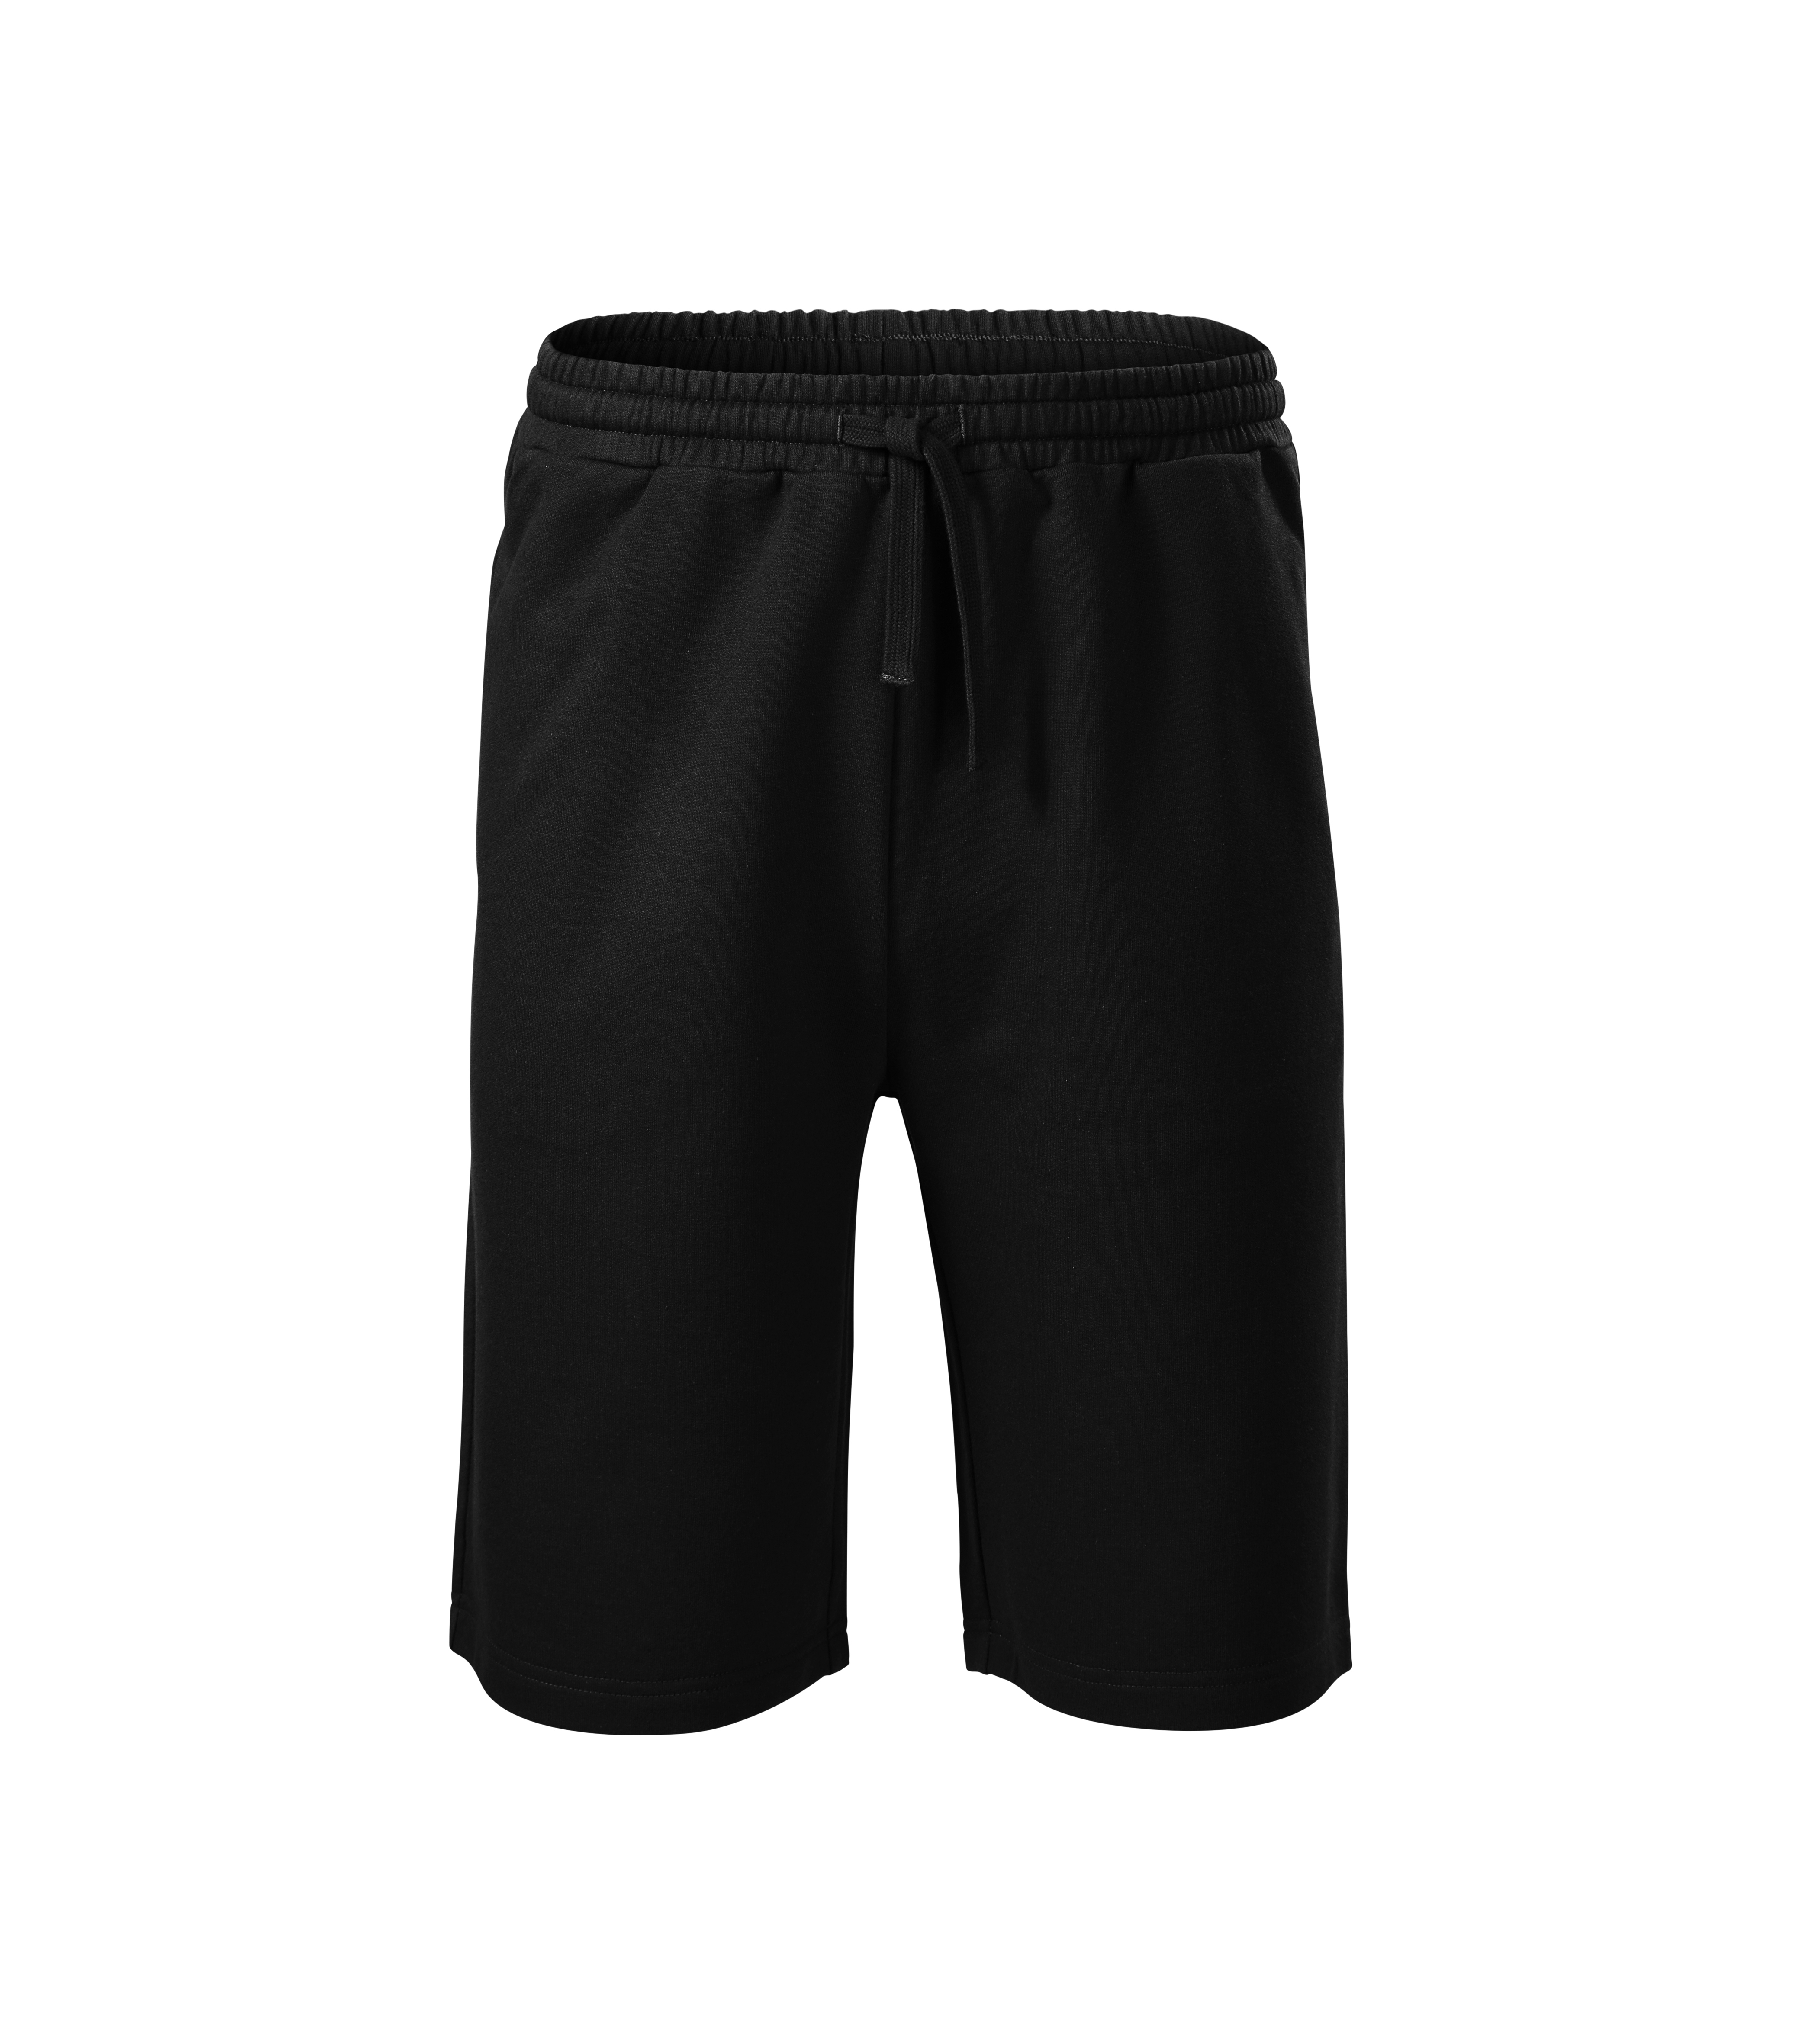 Men's Shorts Malfini Comfy